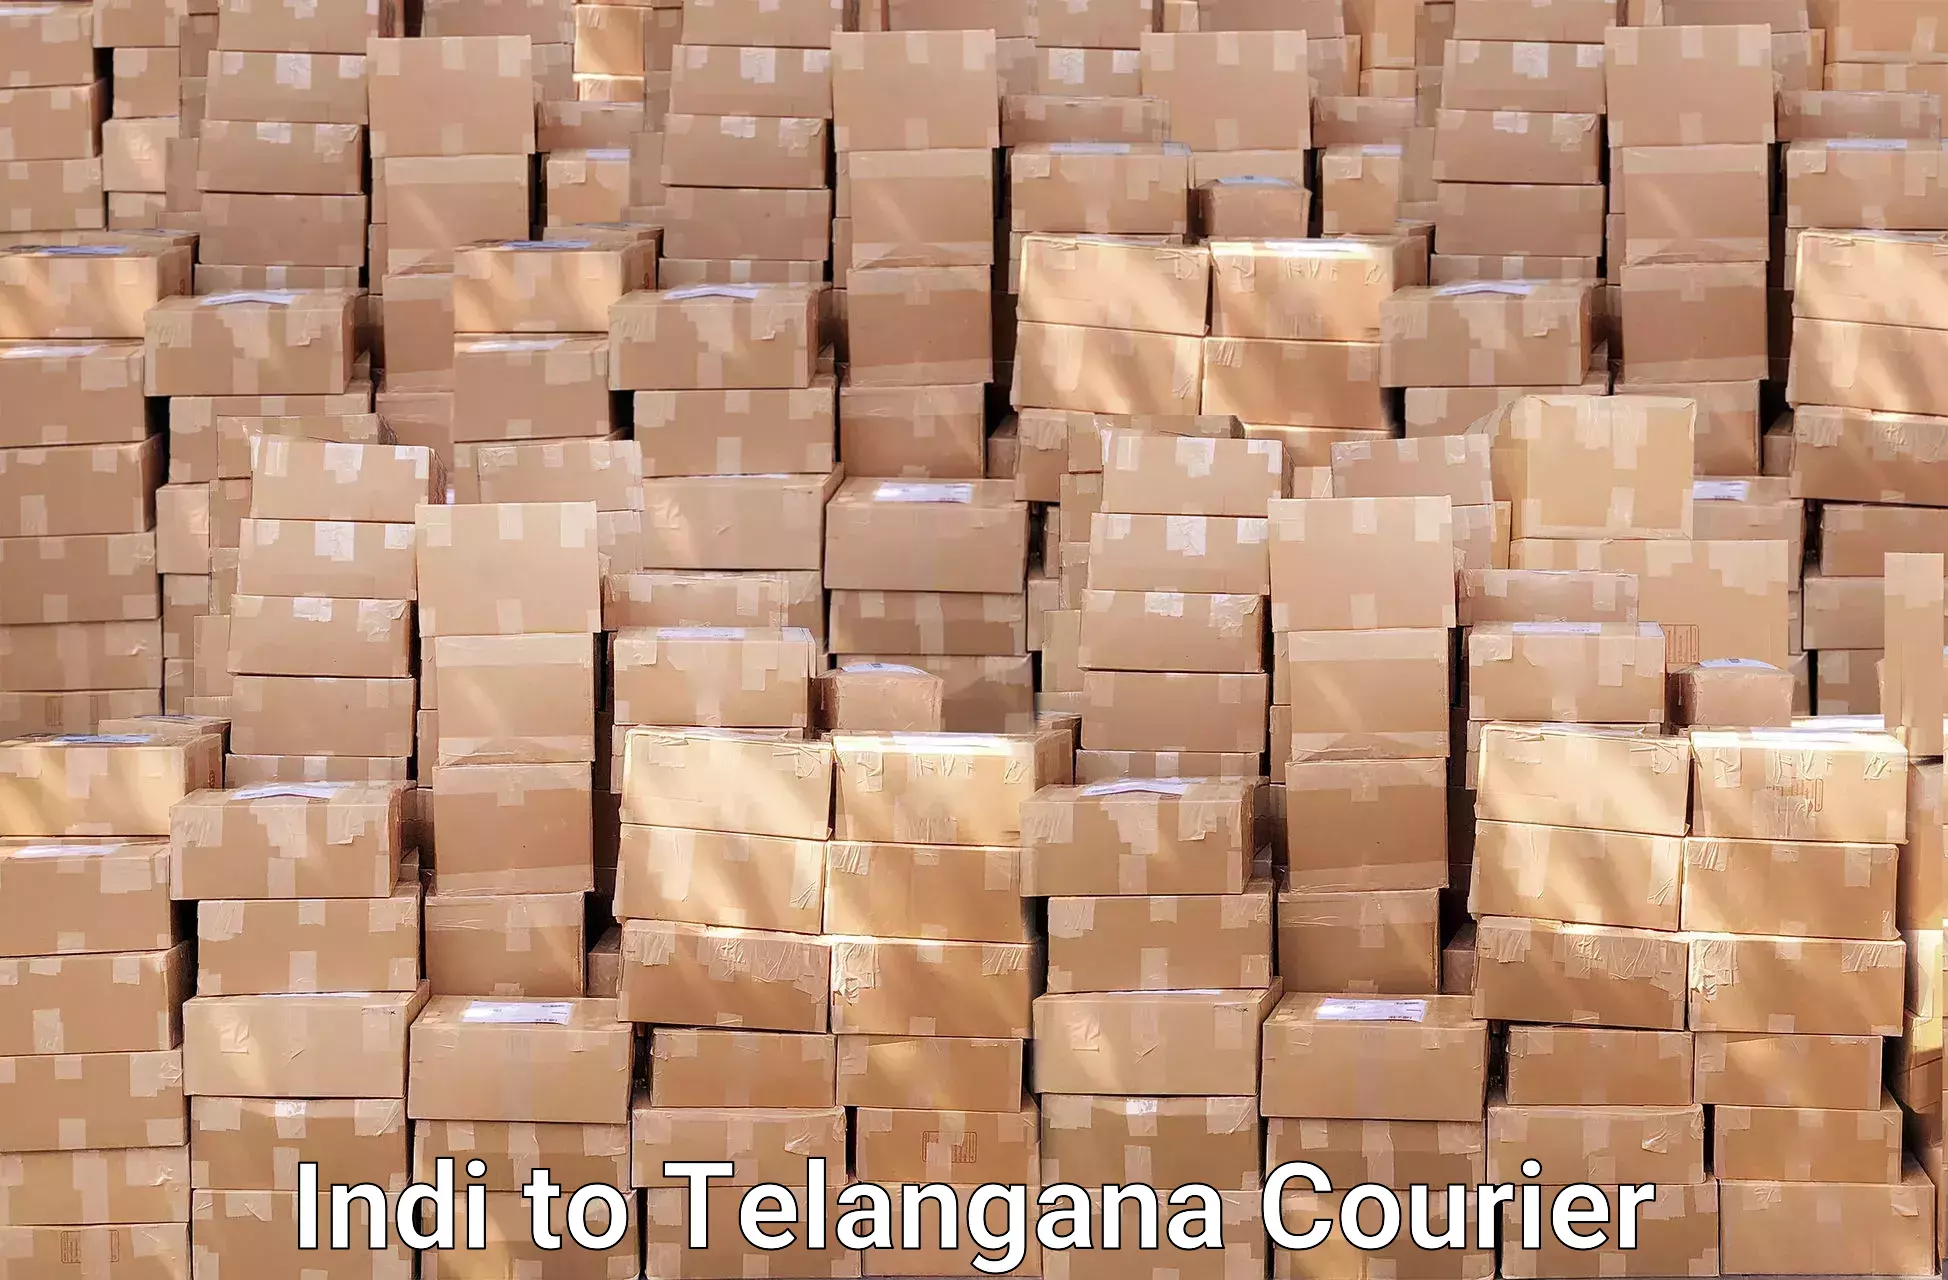 Furniture transport experts Indi to Telangana